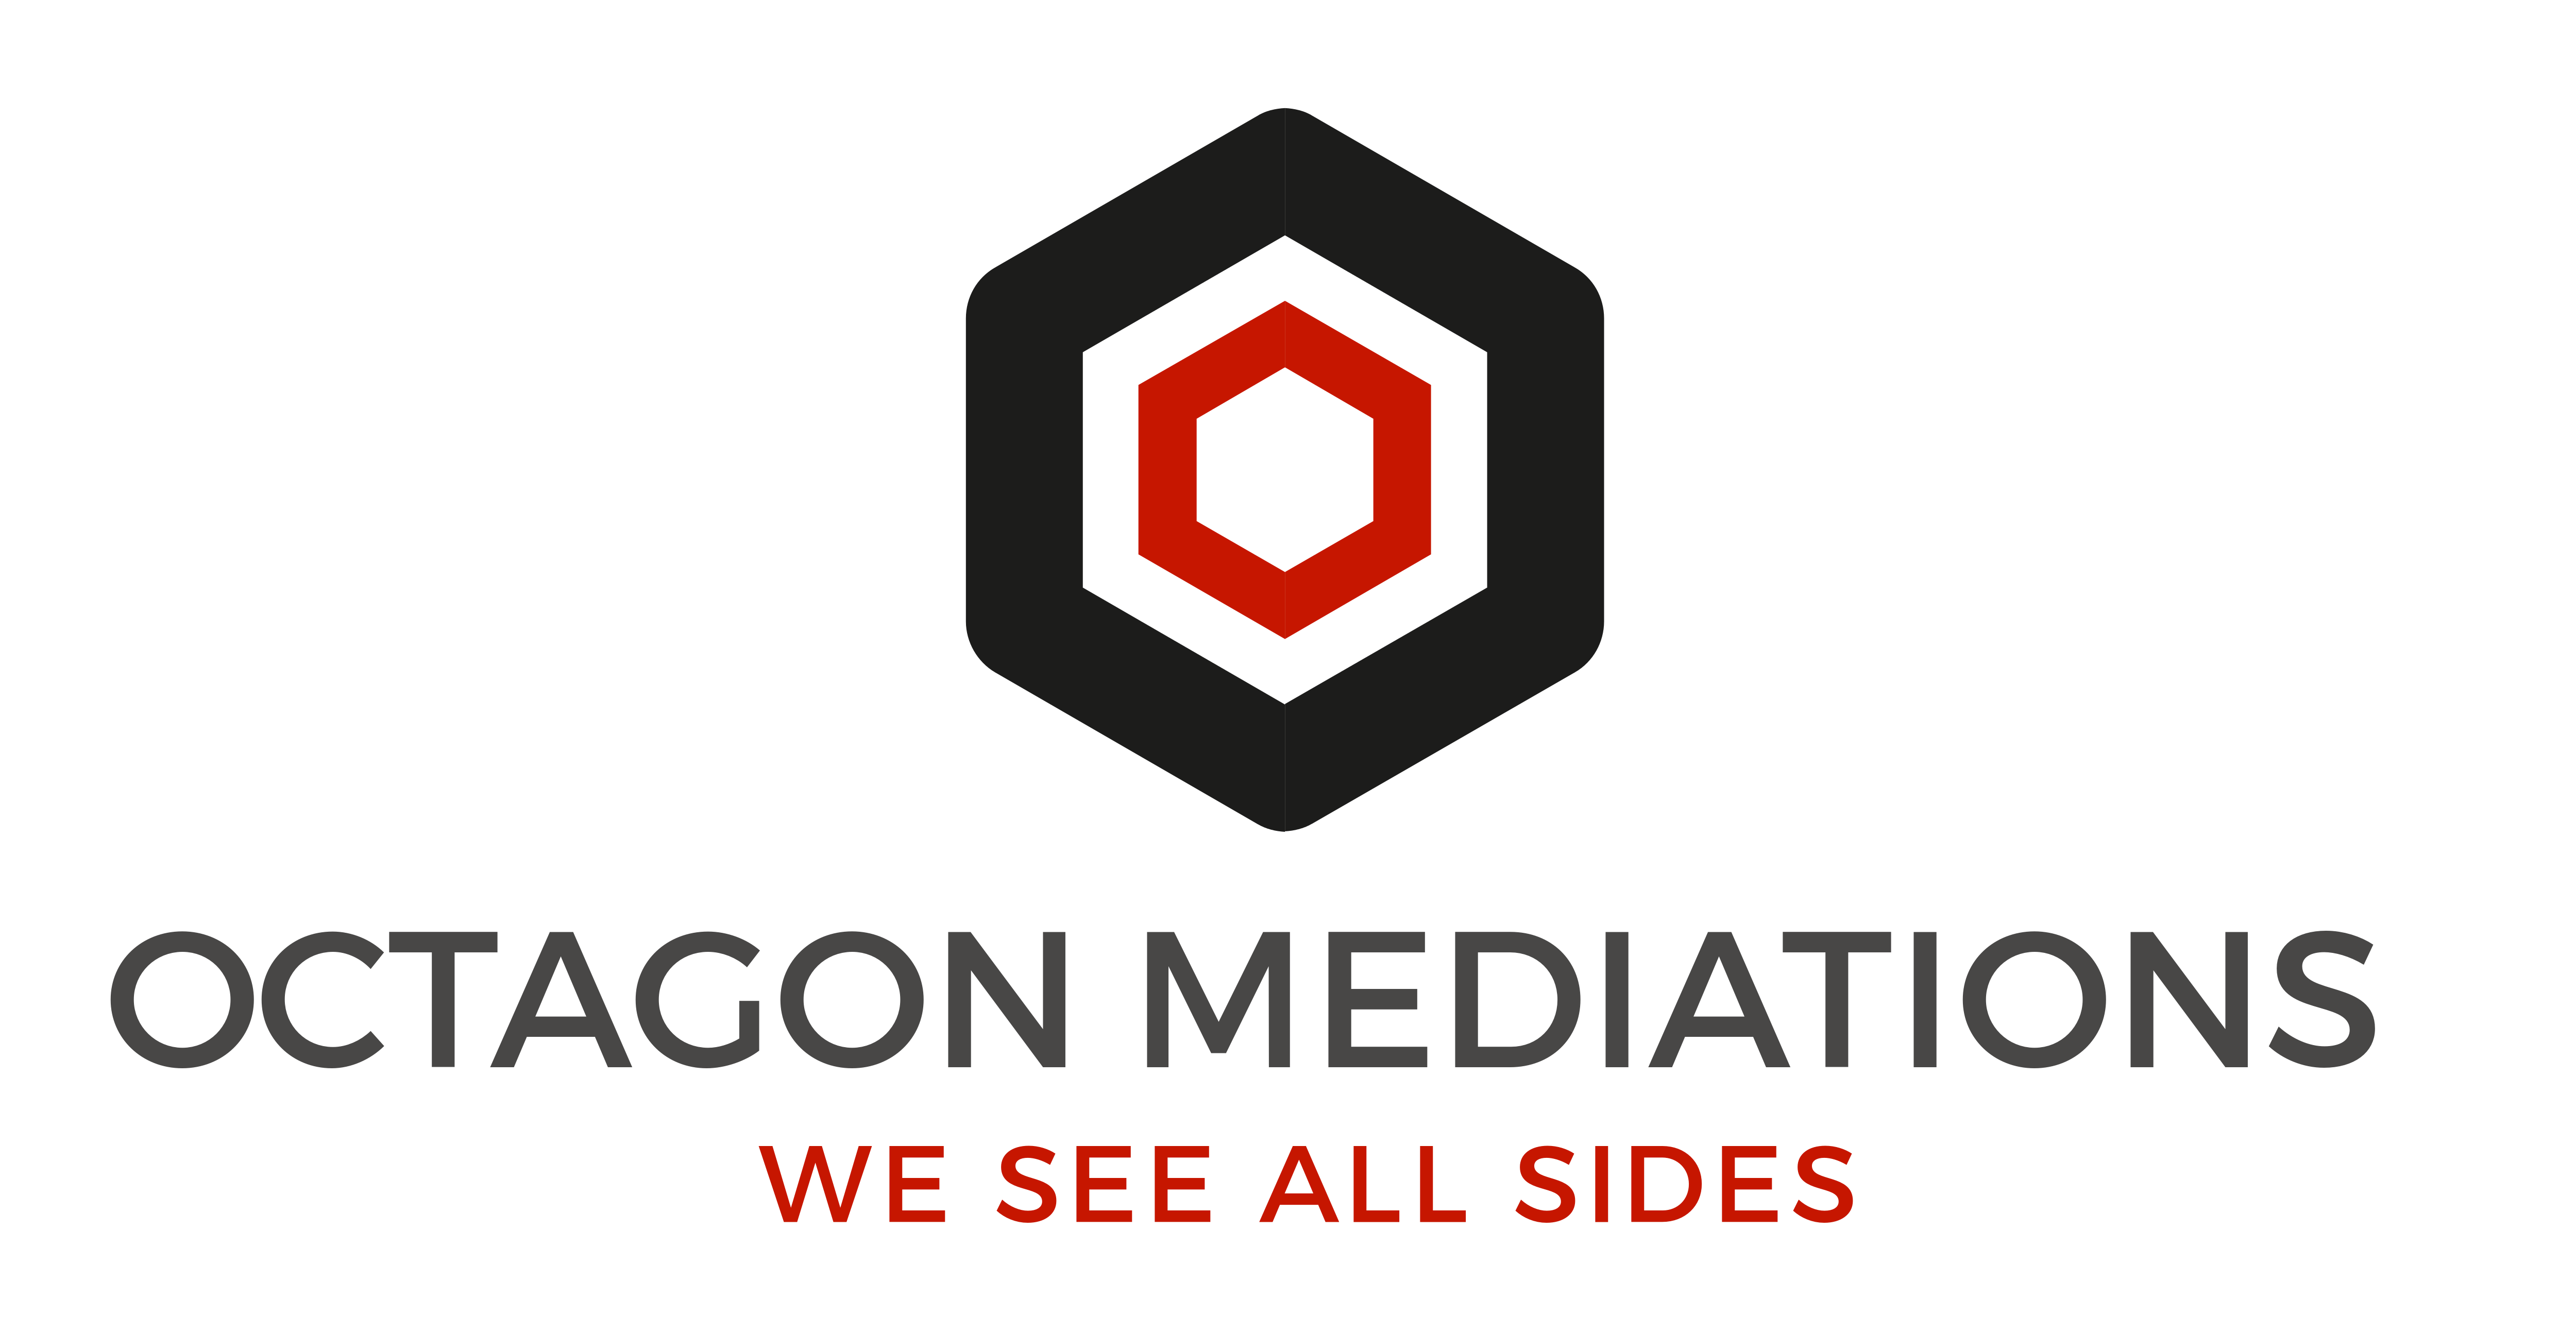 Octagon Mediations